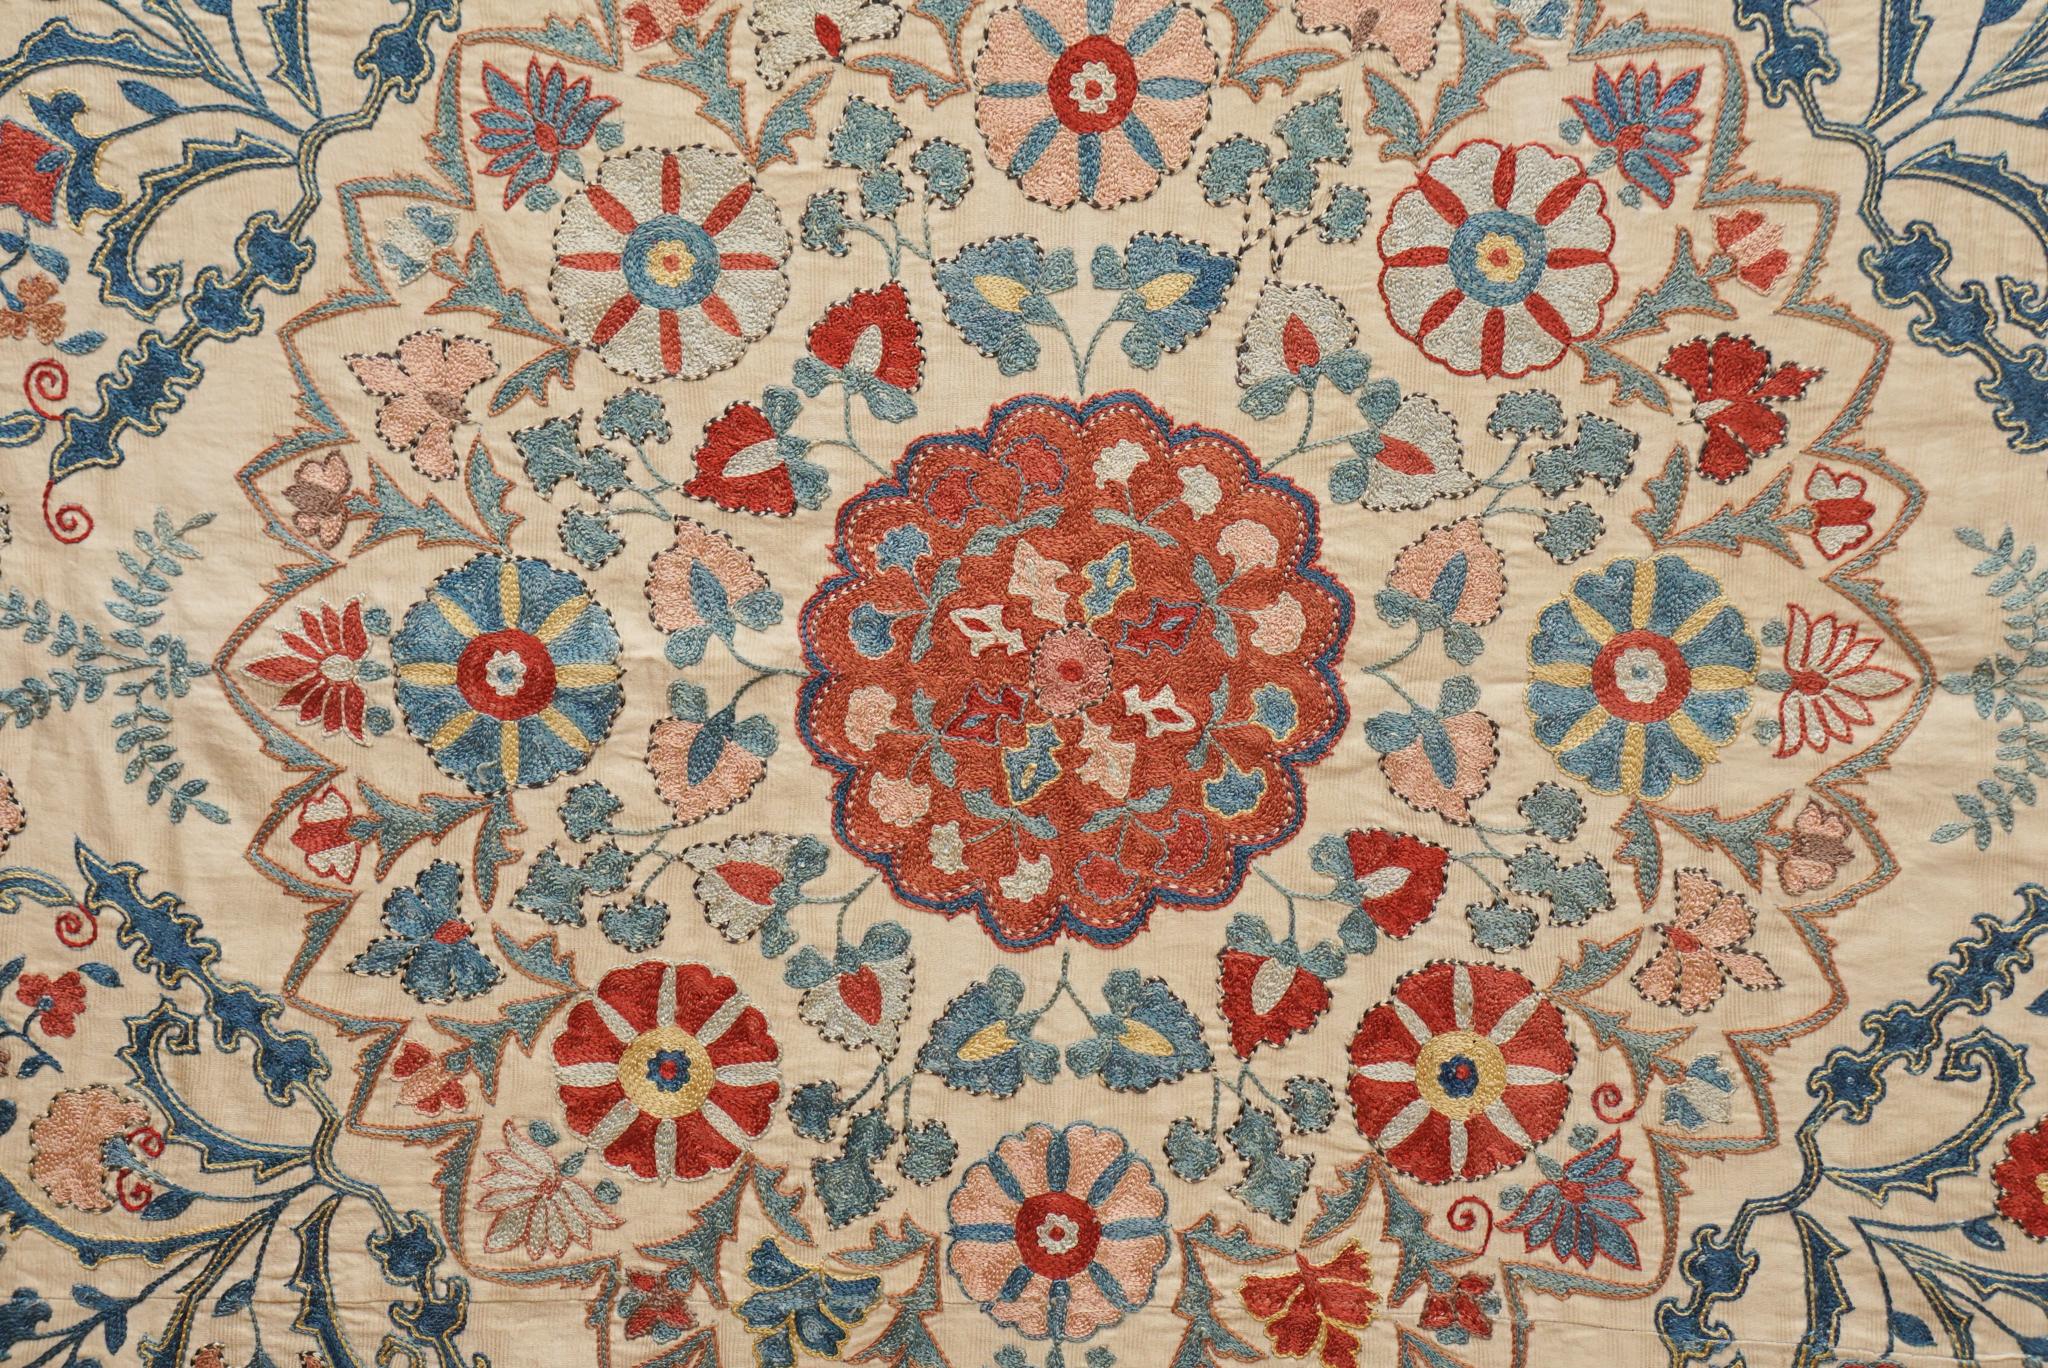 Suzanis, die ursprünglich von Nomadenstämmen in Tadschikistan, Usbekistan und Kasachstan stammen, sind bekannt für ihre komplizierten Stickereien, ihre Farbenpracht und ihre kunstvollen Motive.  Diese Suzani, möglicherweise aus dem späten 18. /